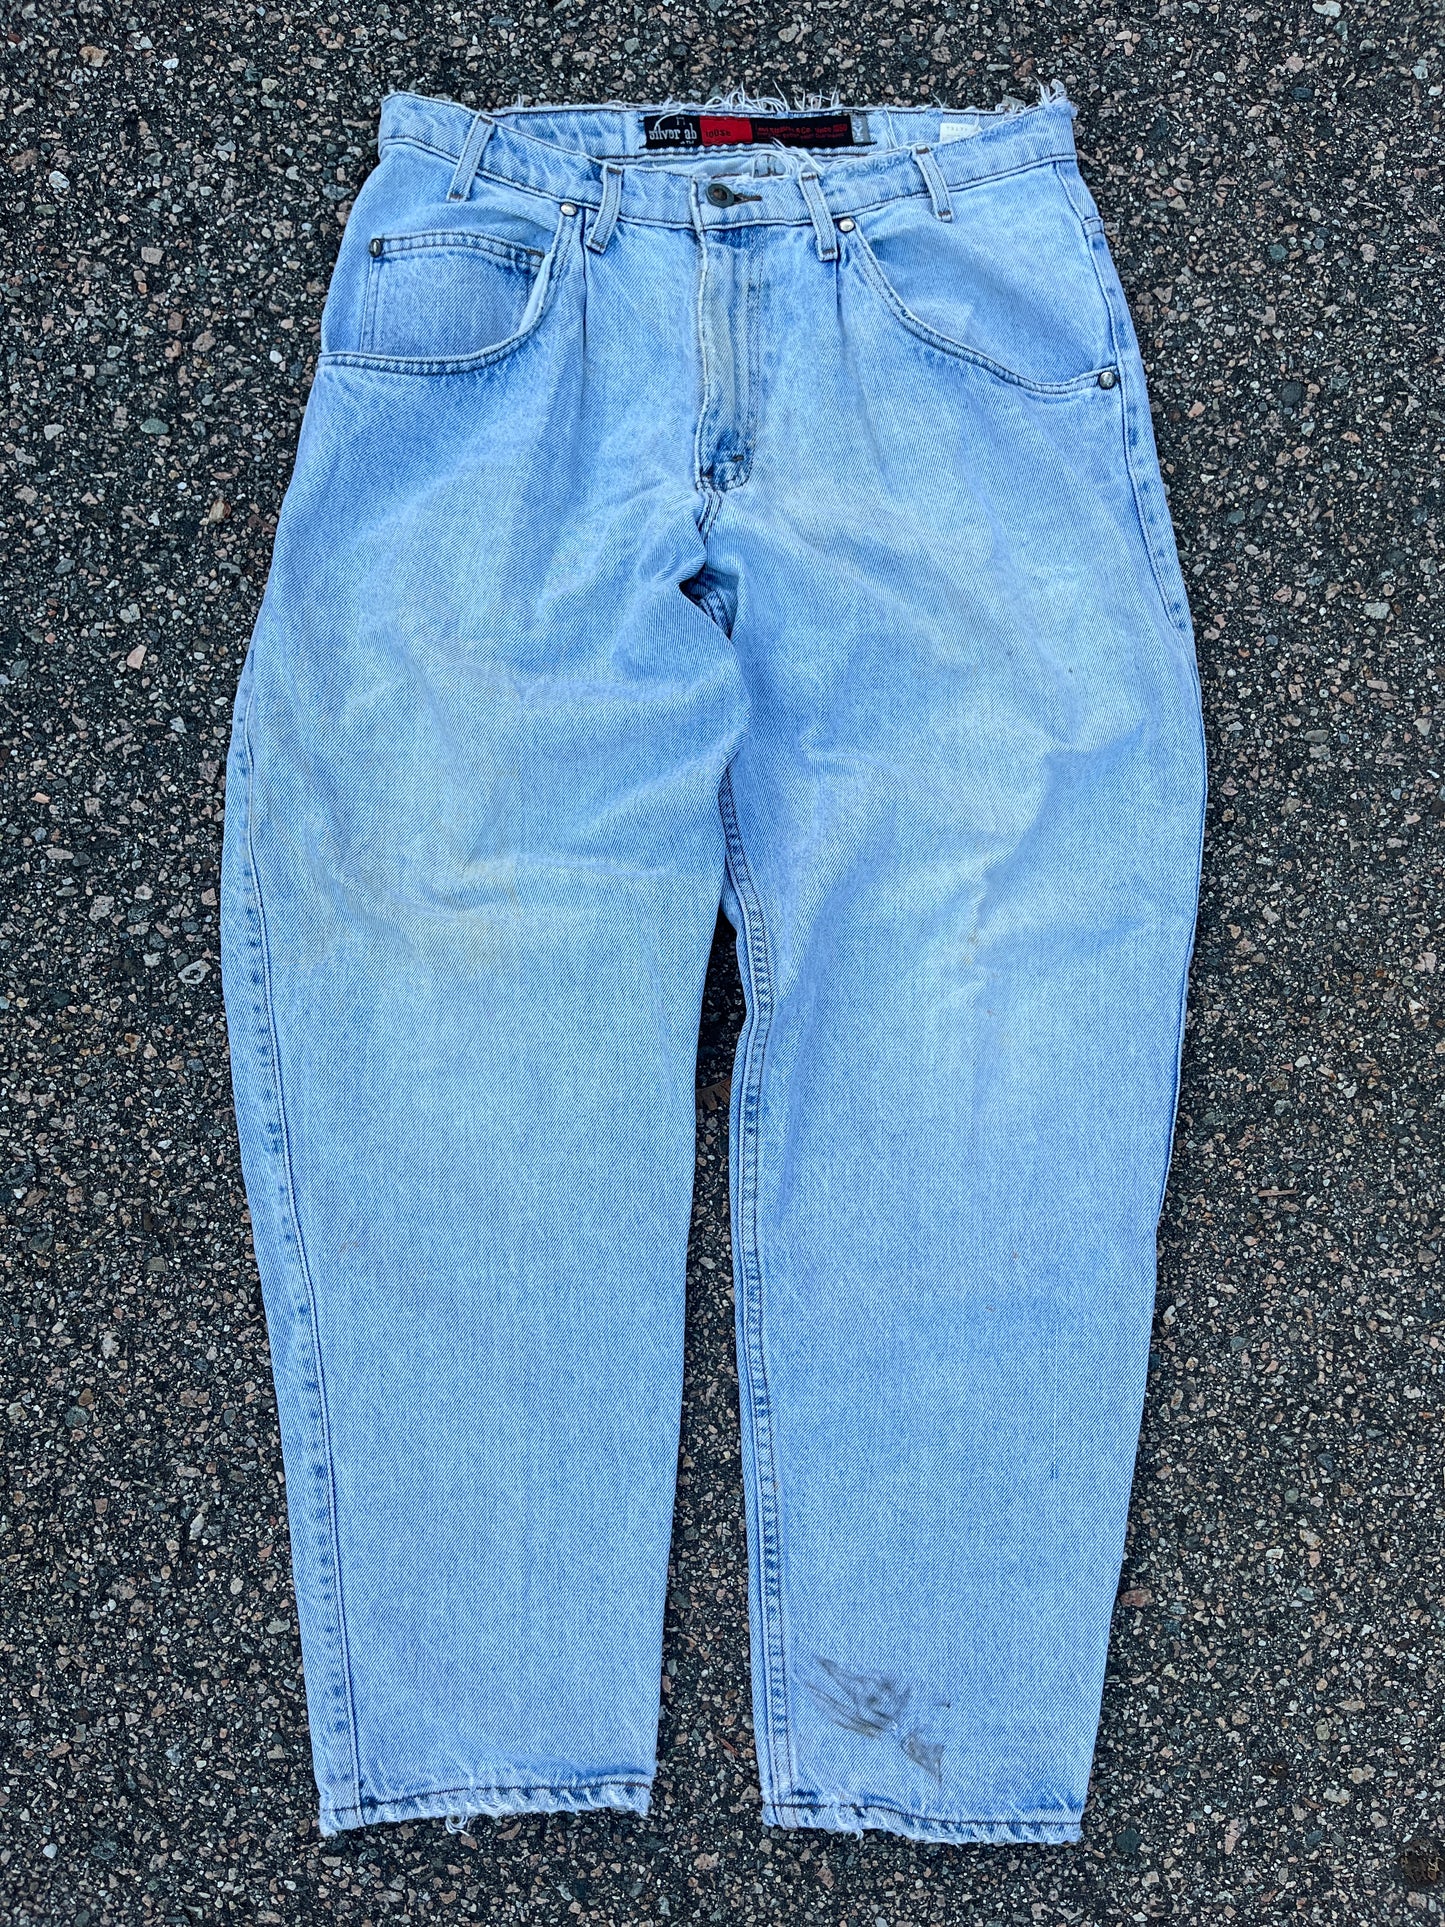 Levi’s 661 Silvertab Faded Denim Loose Fit Pants - 31 x 29.5